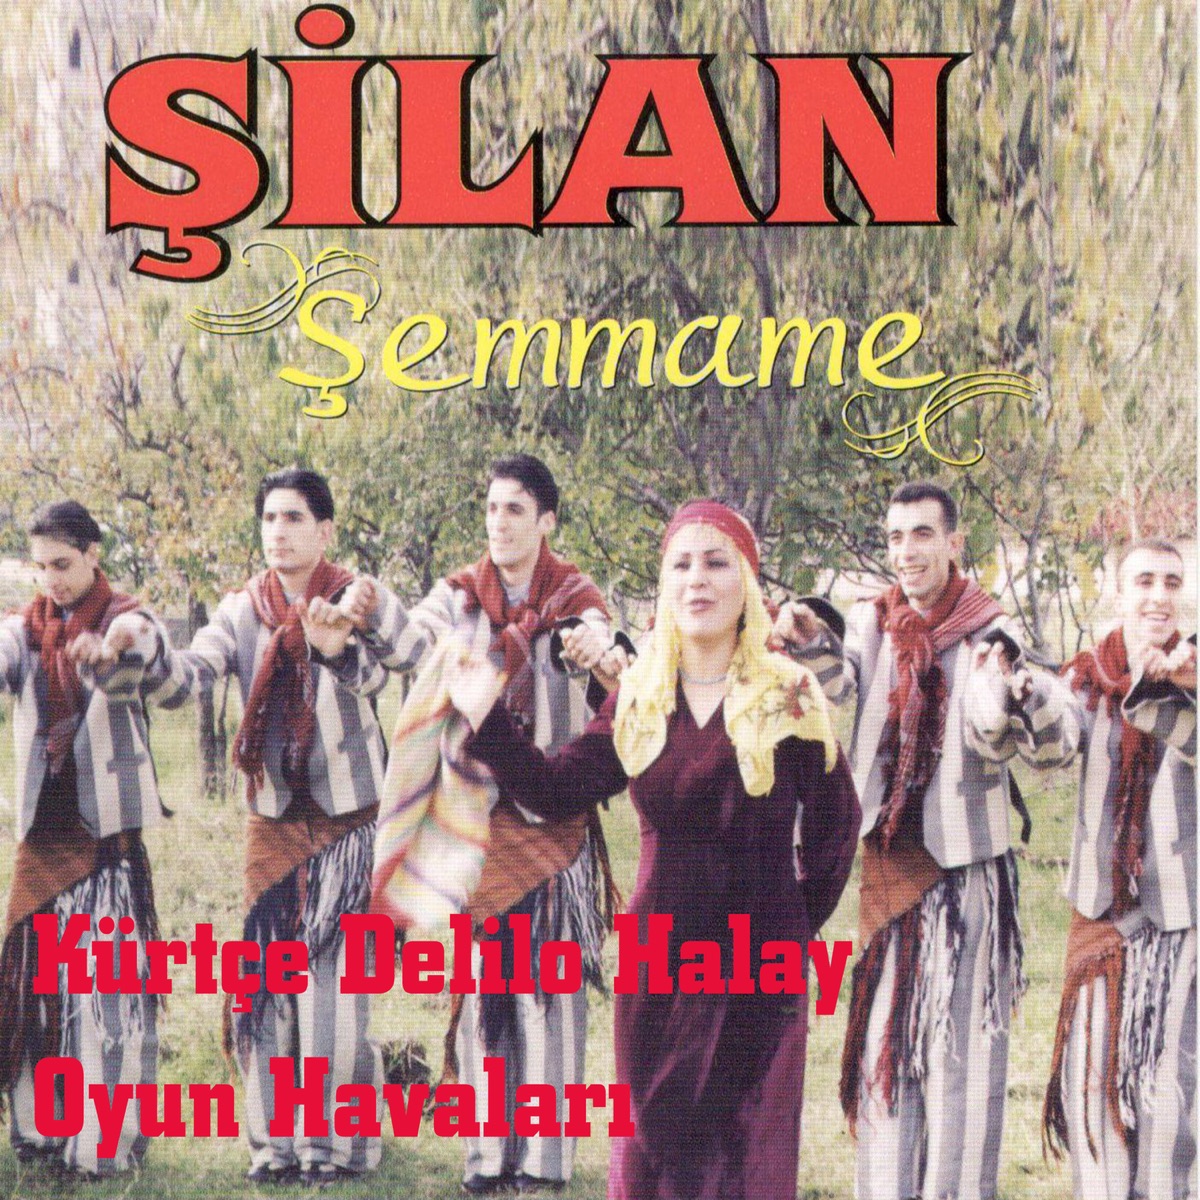 Şemmame / Kürtçe Delilo Halay Oyun Havaları - Album by Silan - Apple Music